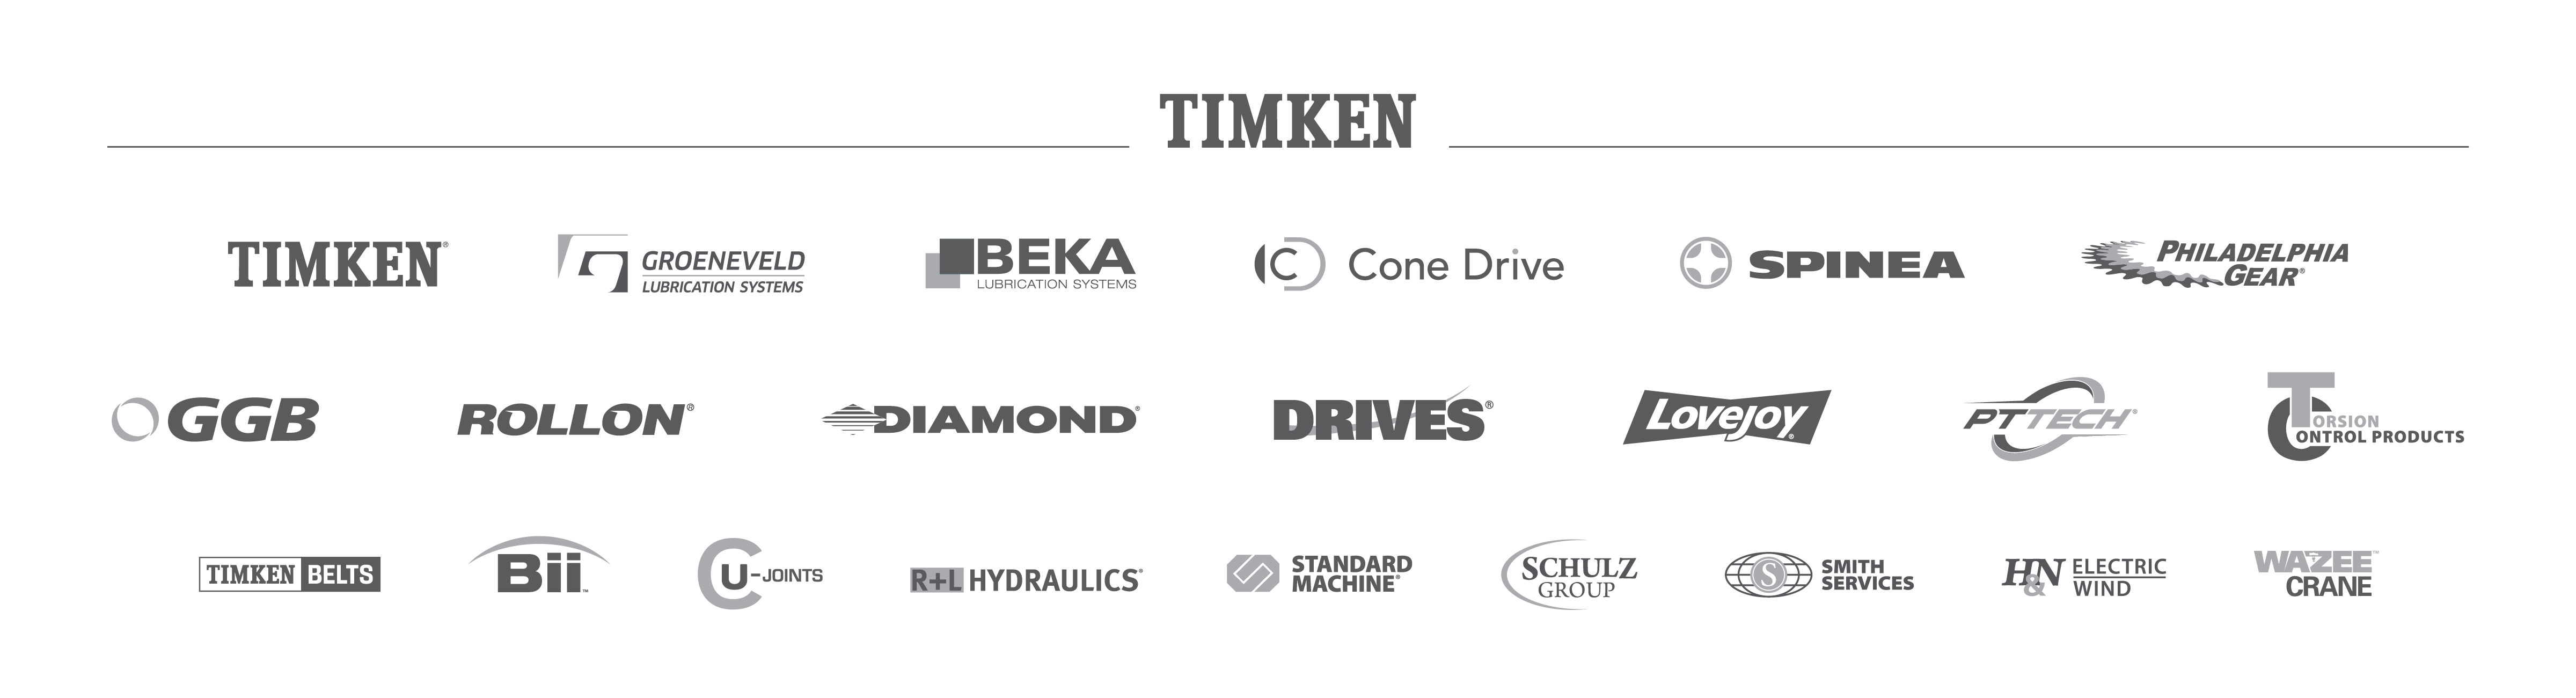 Timken Brands